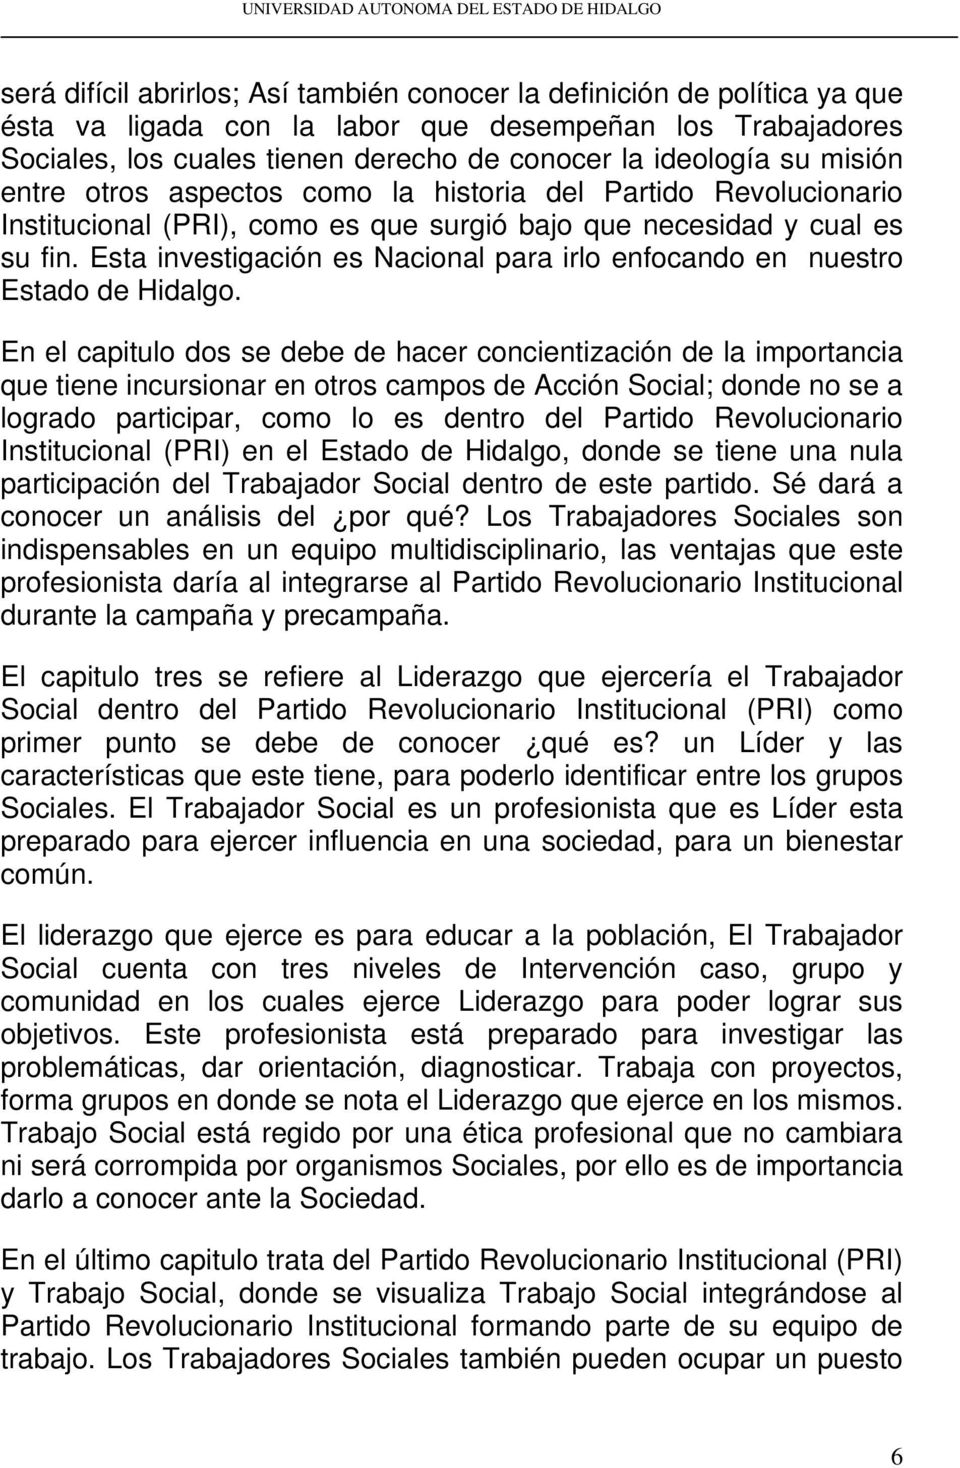 Esta investigación es Nacional para irlo enfocando en nuestro Estado de Hidalgo.